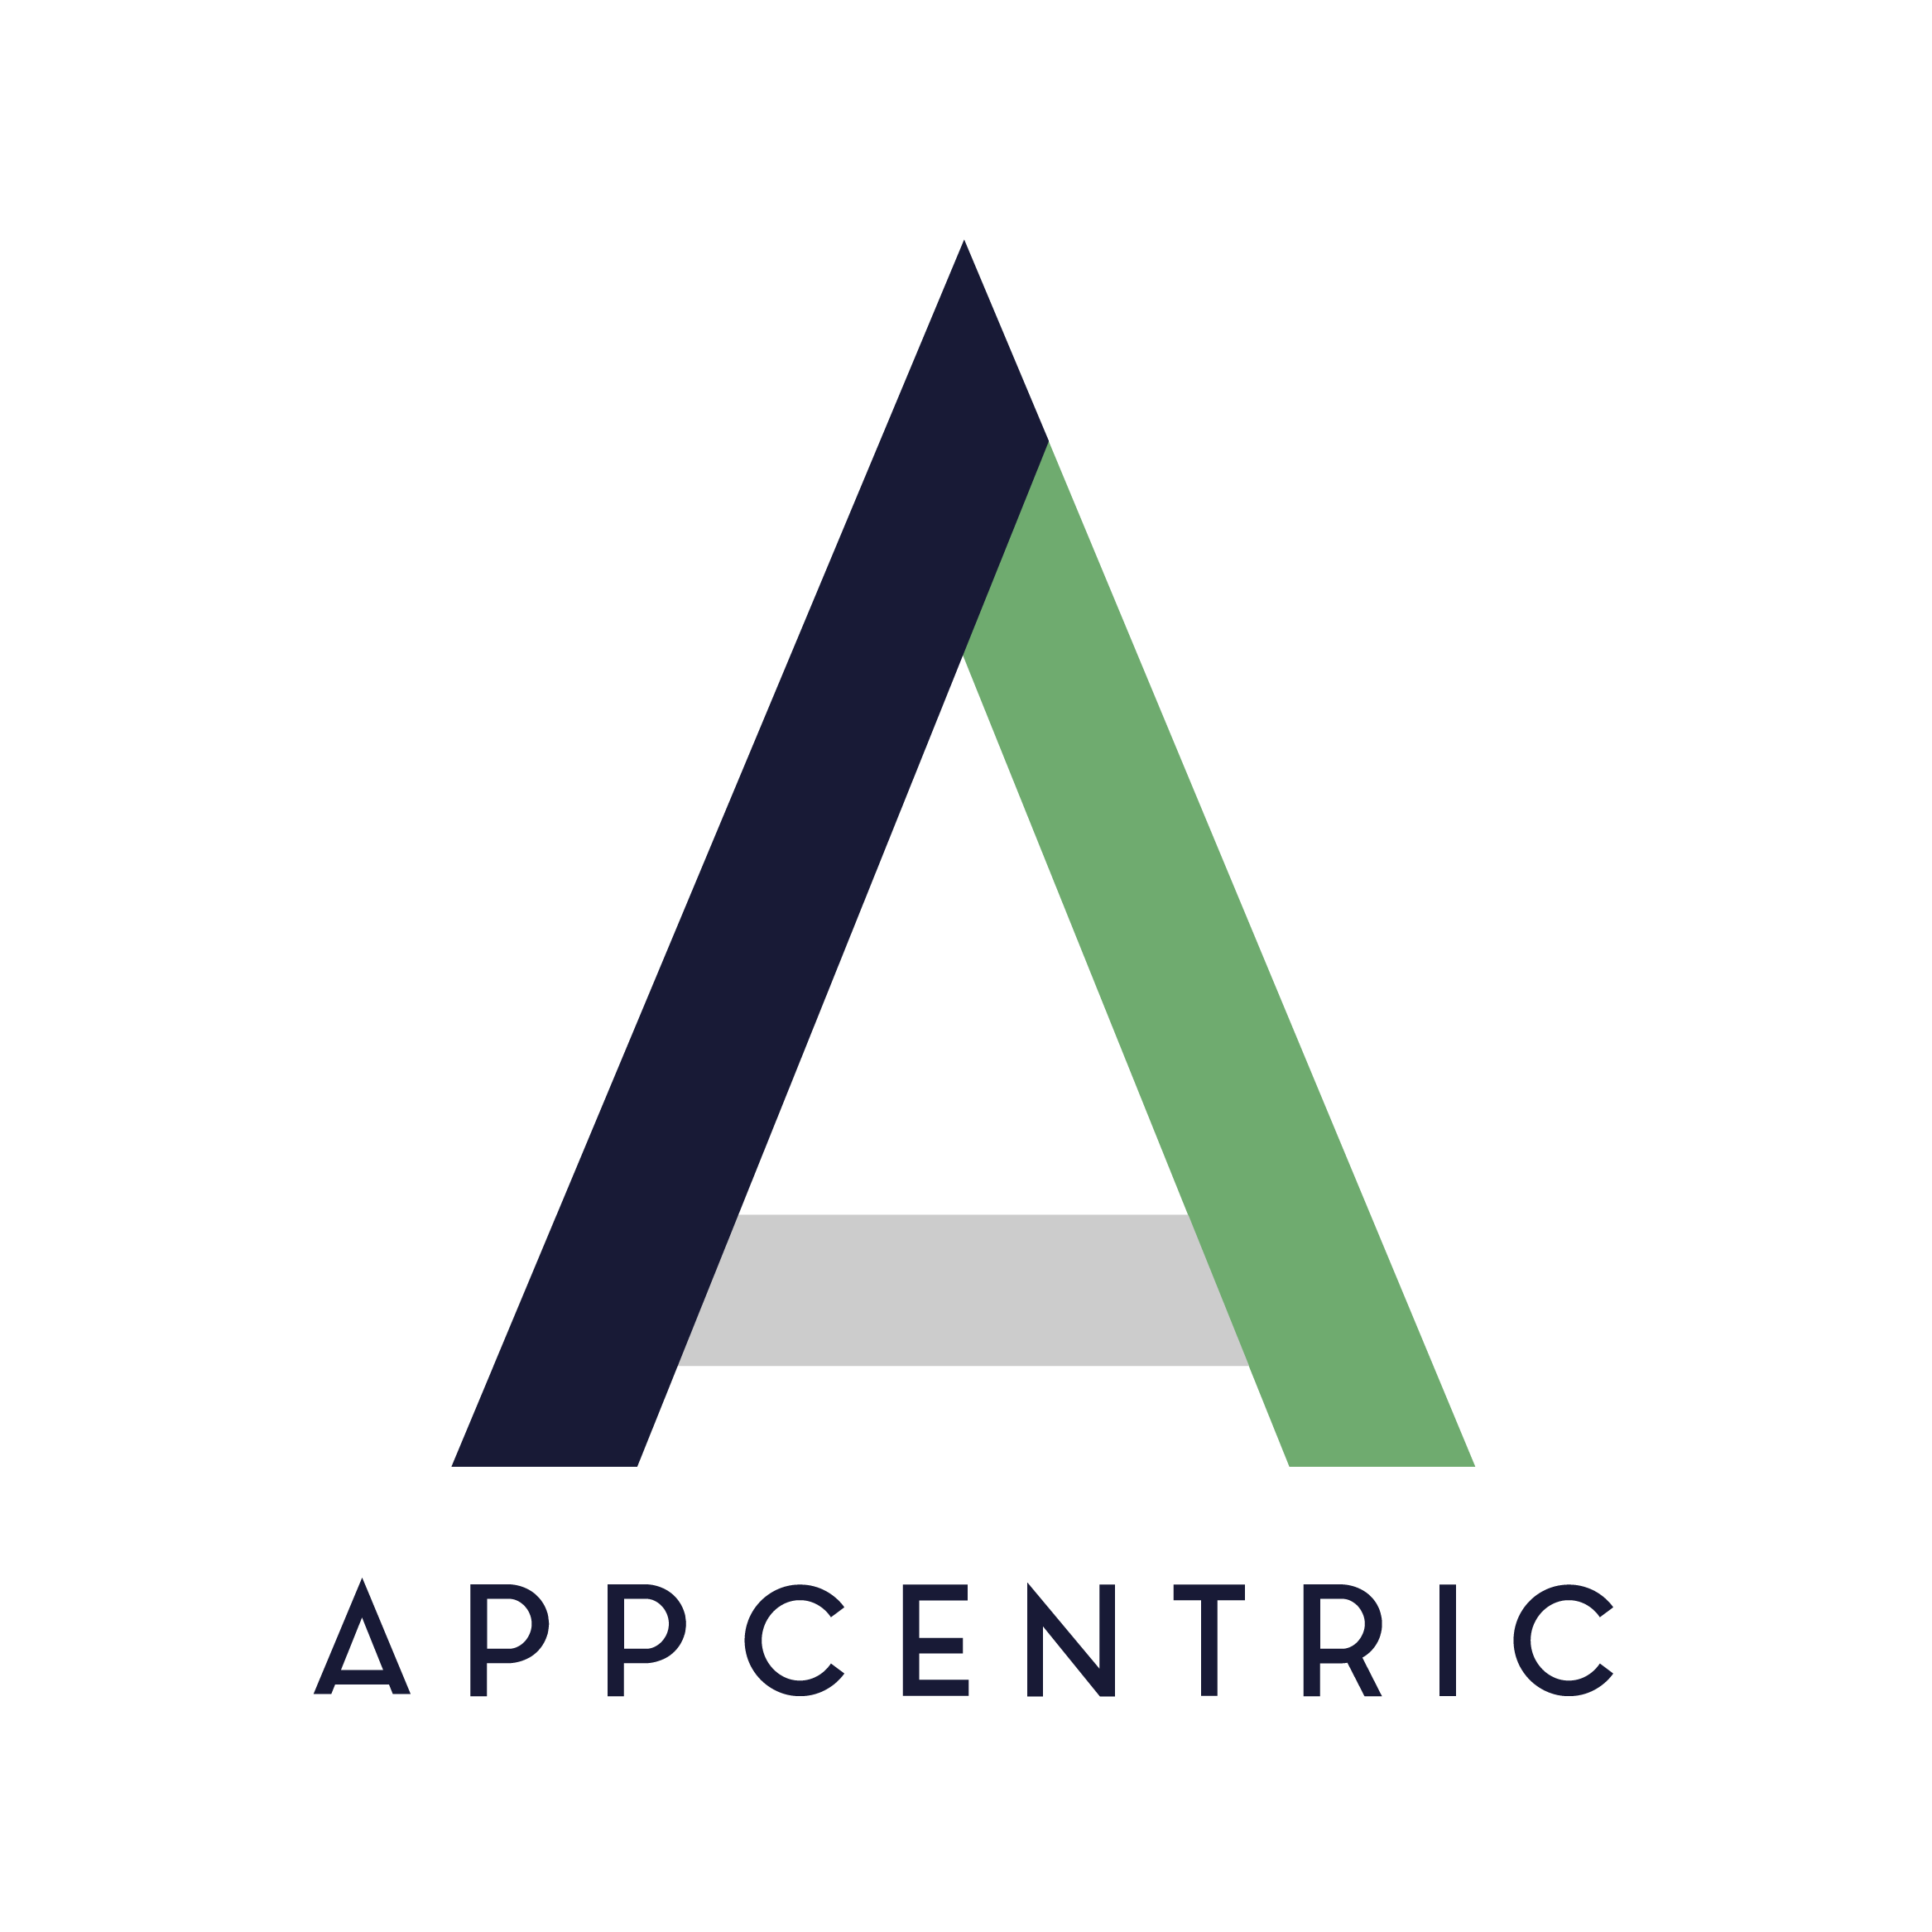 Meet Appcentric